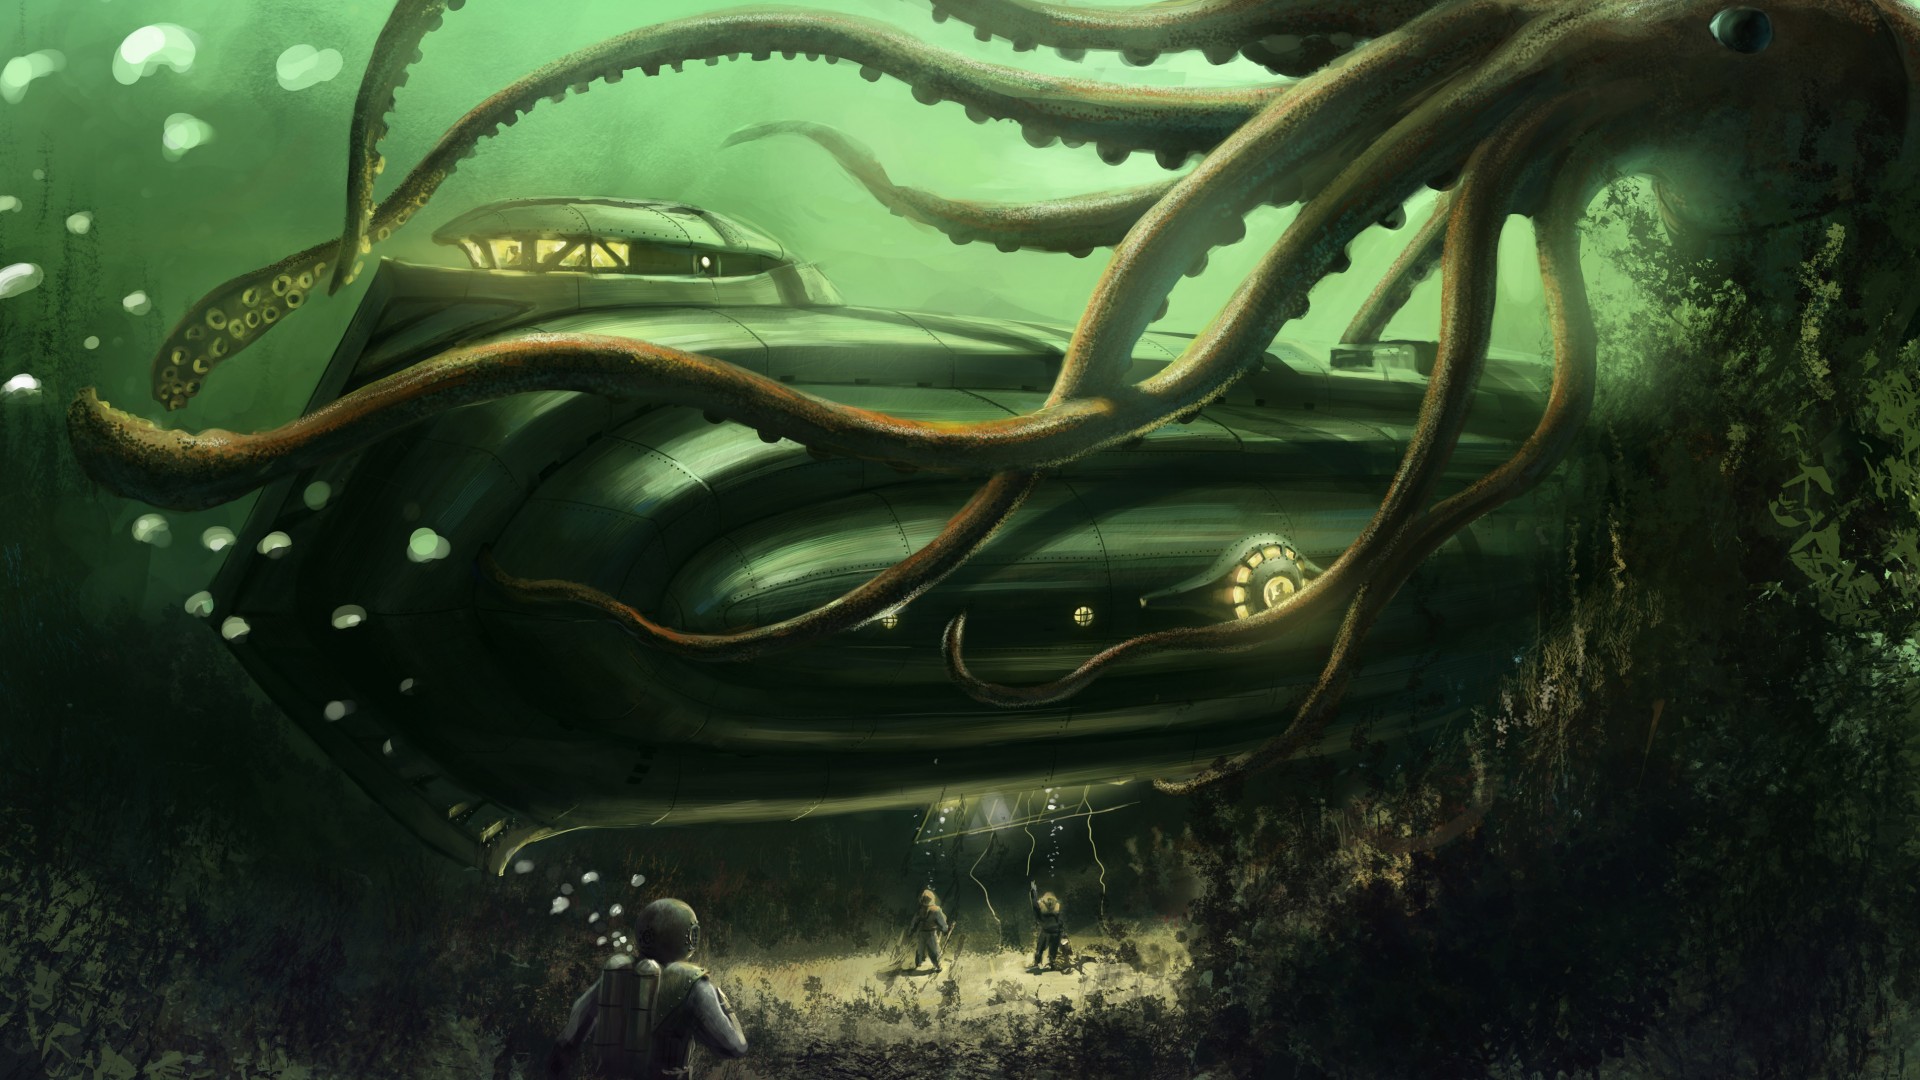 Octopus, Nautilus, Jules Verne, bottom, ocean, boat. Underwater, ocean, sea, water, art, green (horizontal)